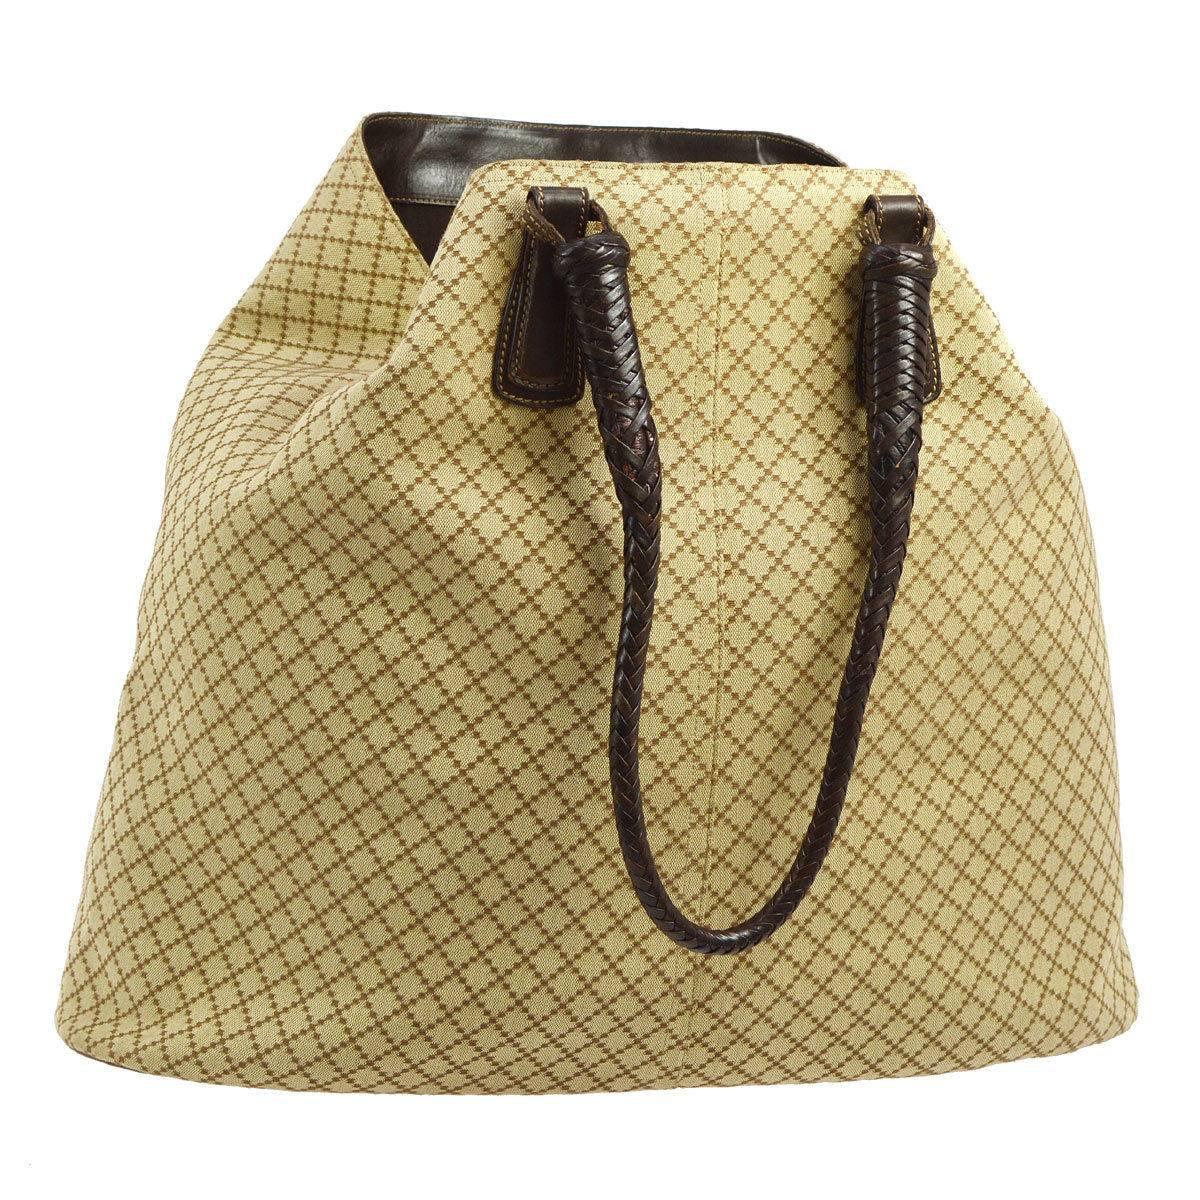 Gucci Monogram Canvas Leather Trim Carryall Travel Large Hobo Shoulder Bag